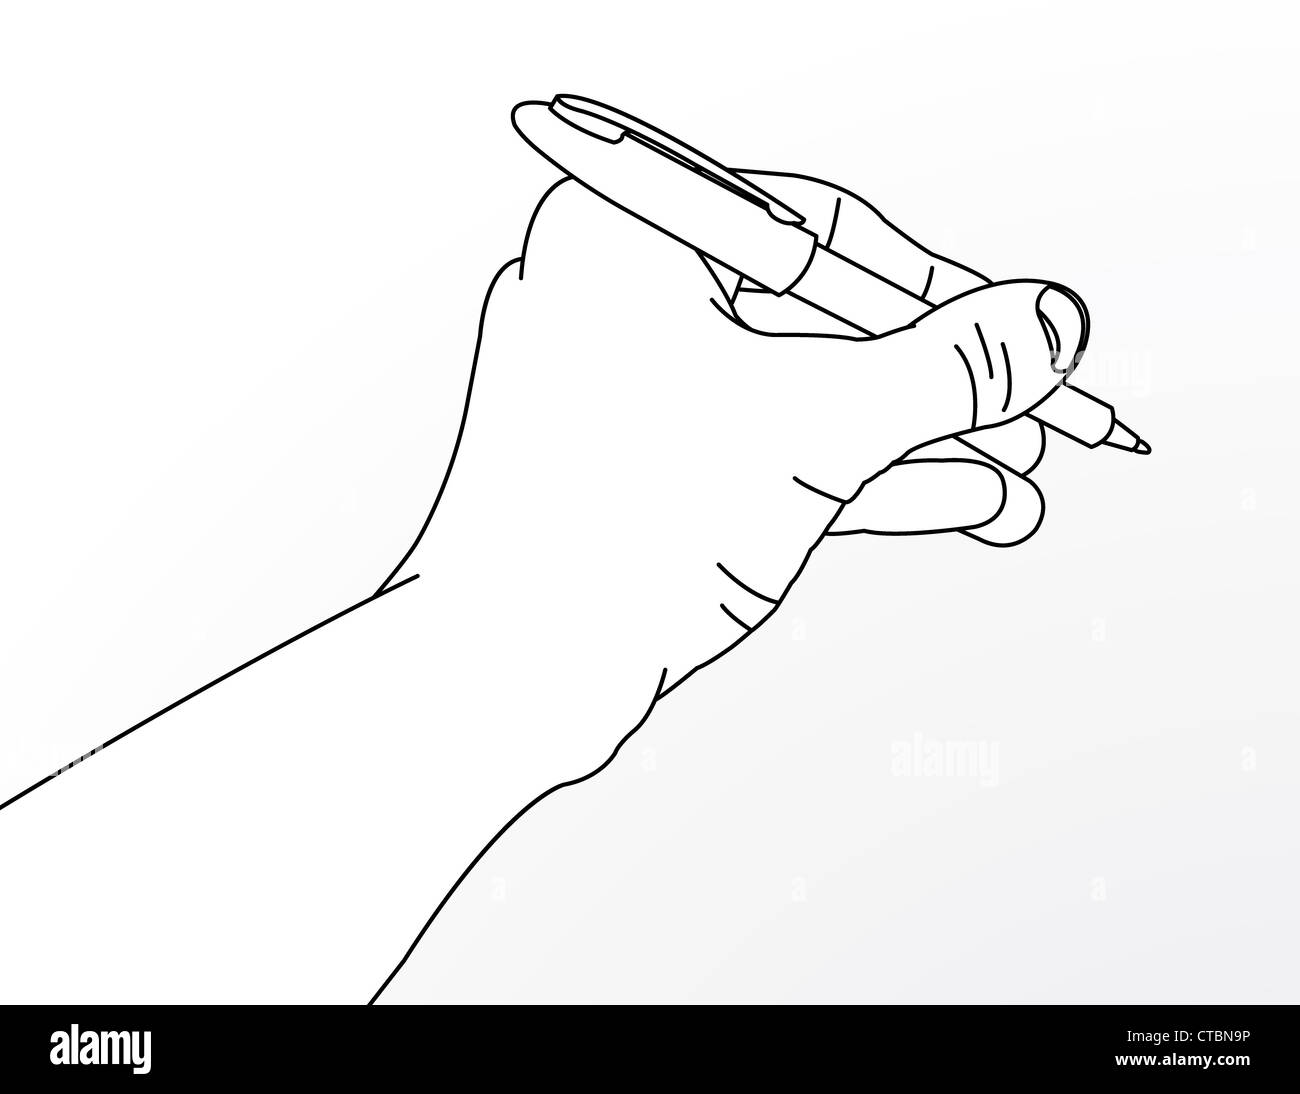 Disegno della linea di canto con la penna. Foto Stock